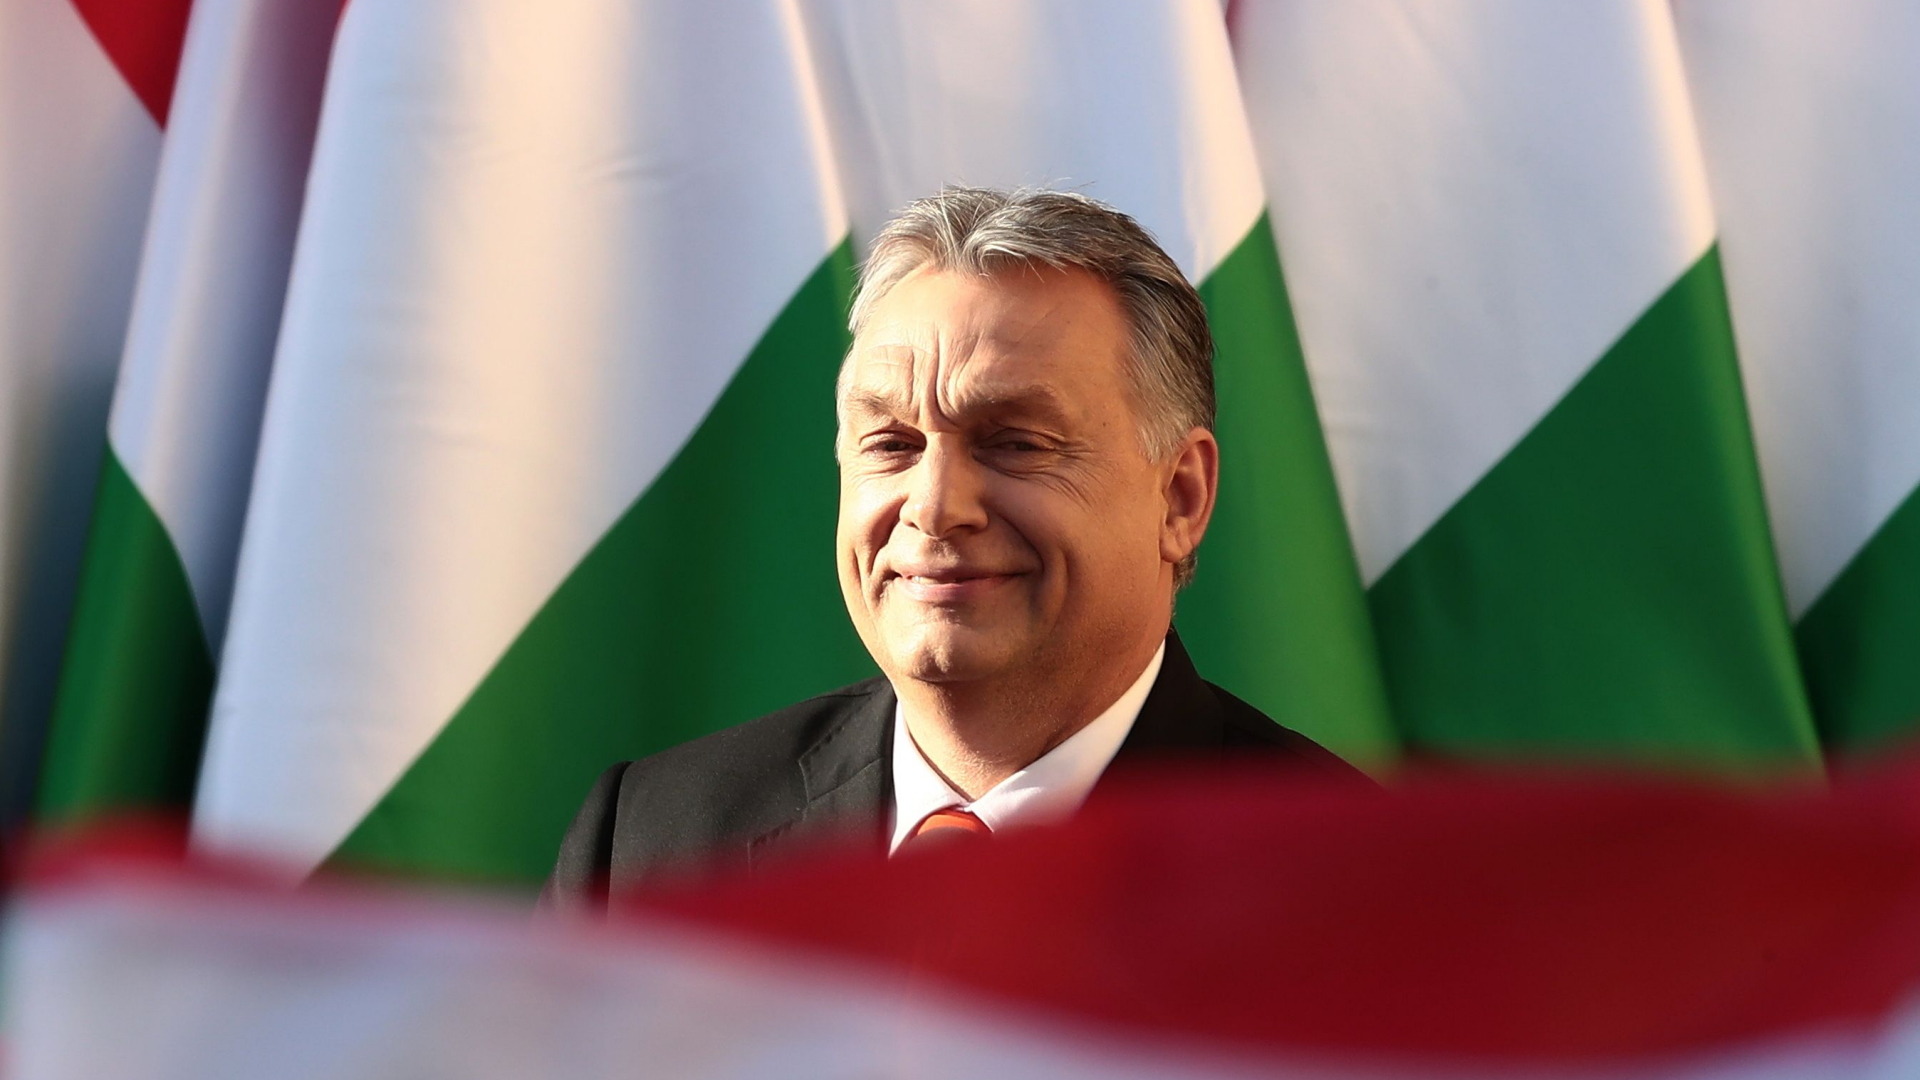 Ungarns Ministerpräsident Viktor Orban ist auf dem Rathausplatz von Szekesfehervar umgeben von grün-rot-weißen Flaggen.